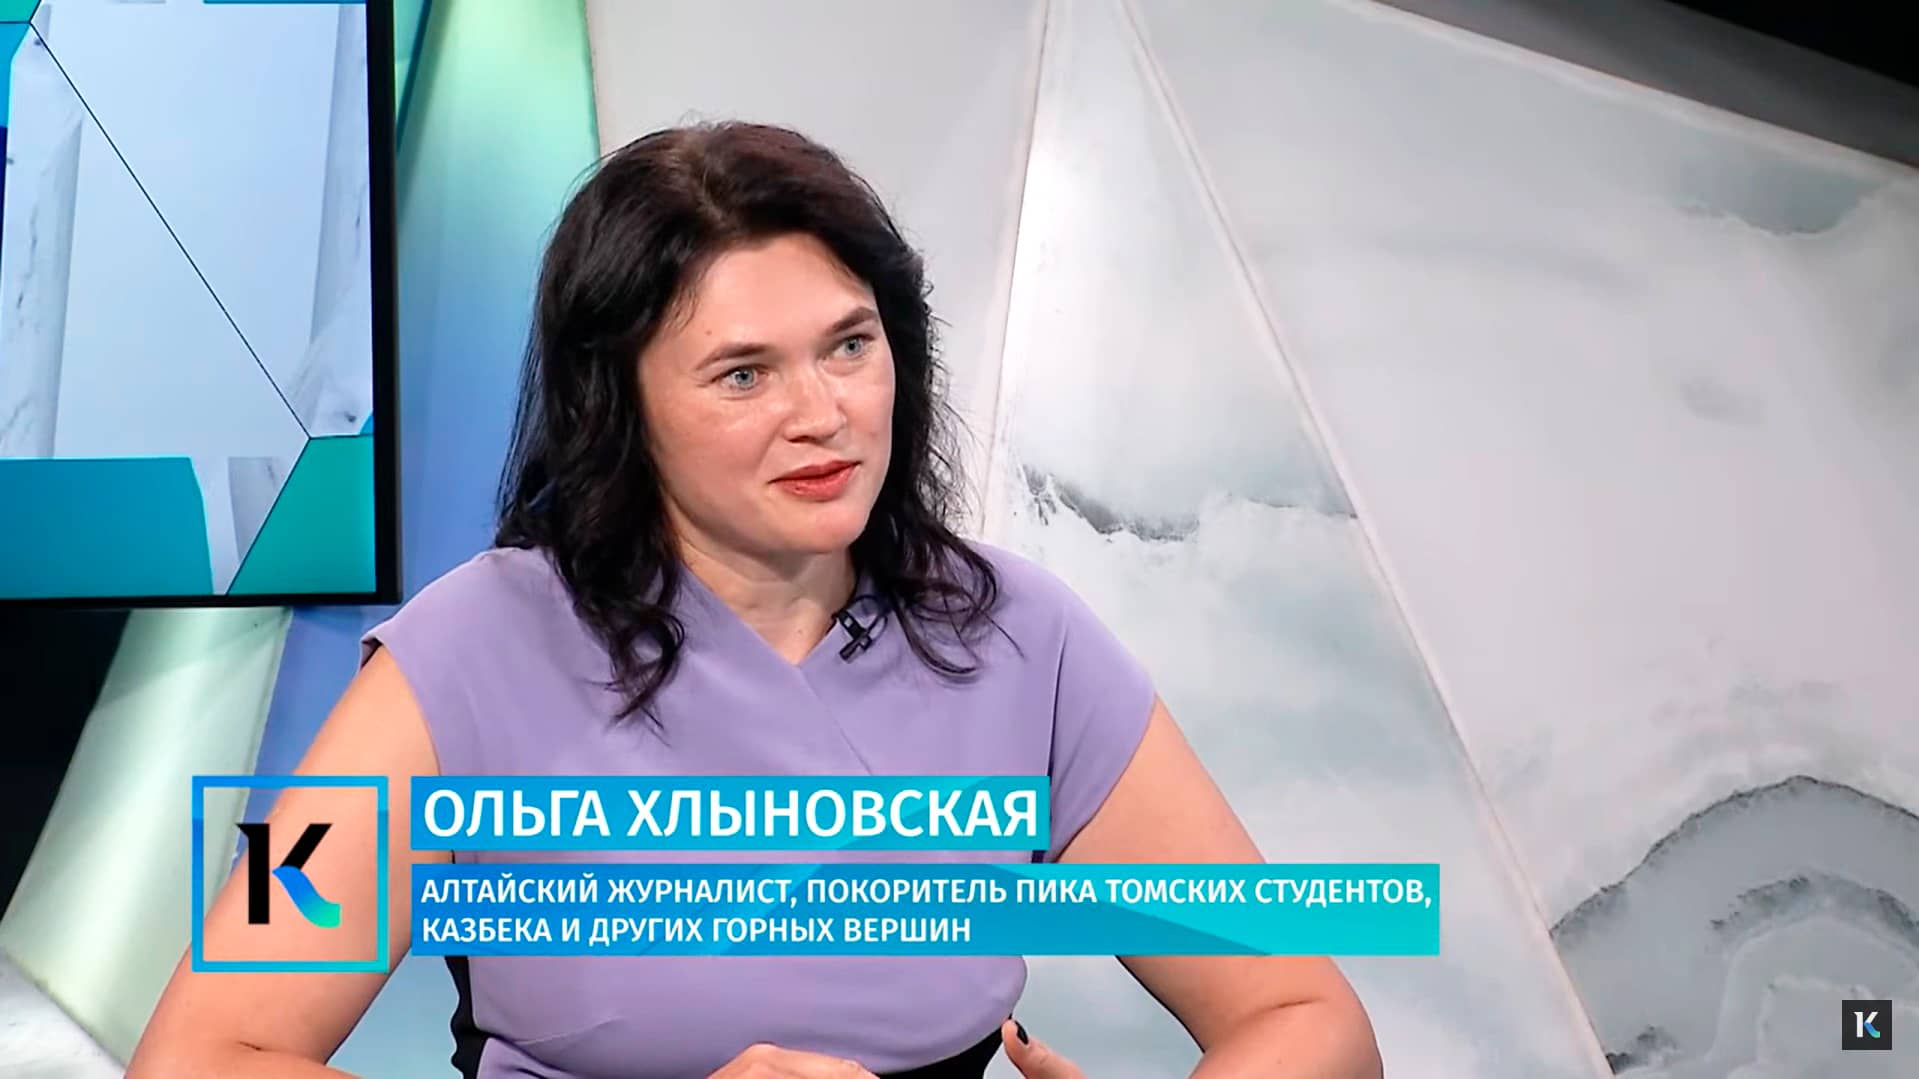 Ольга Хлыновская, ТВ, Катунь 24, журналист